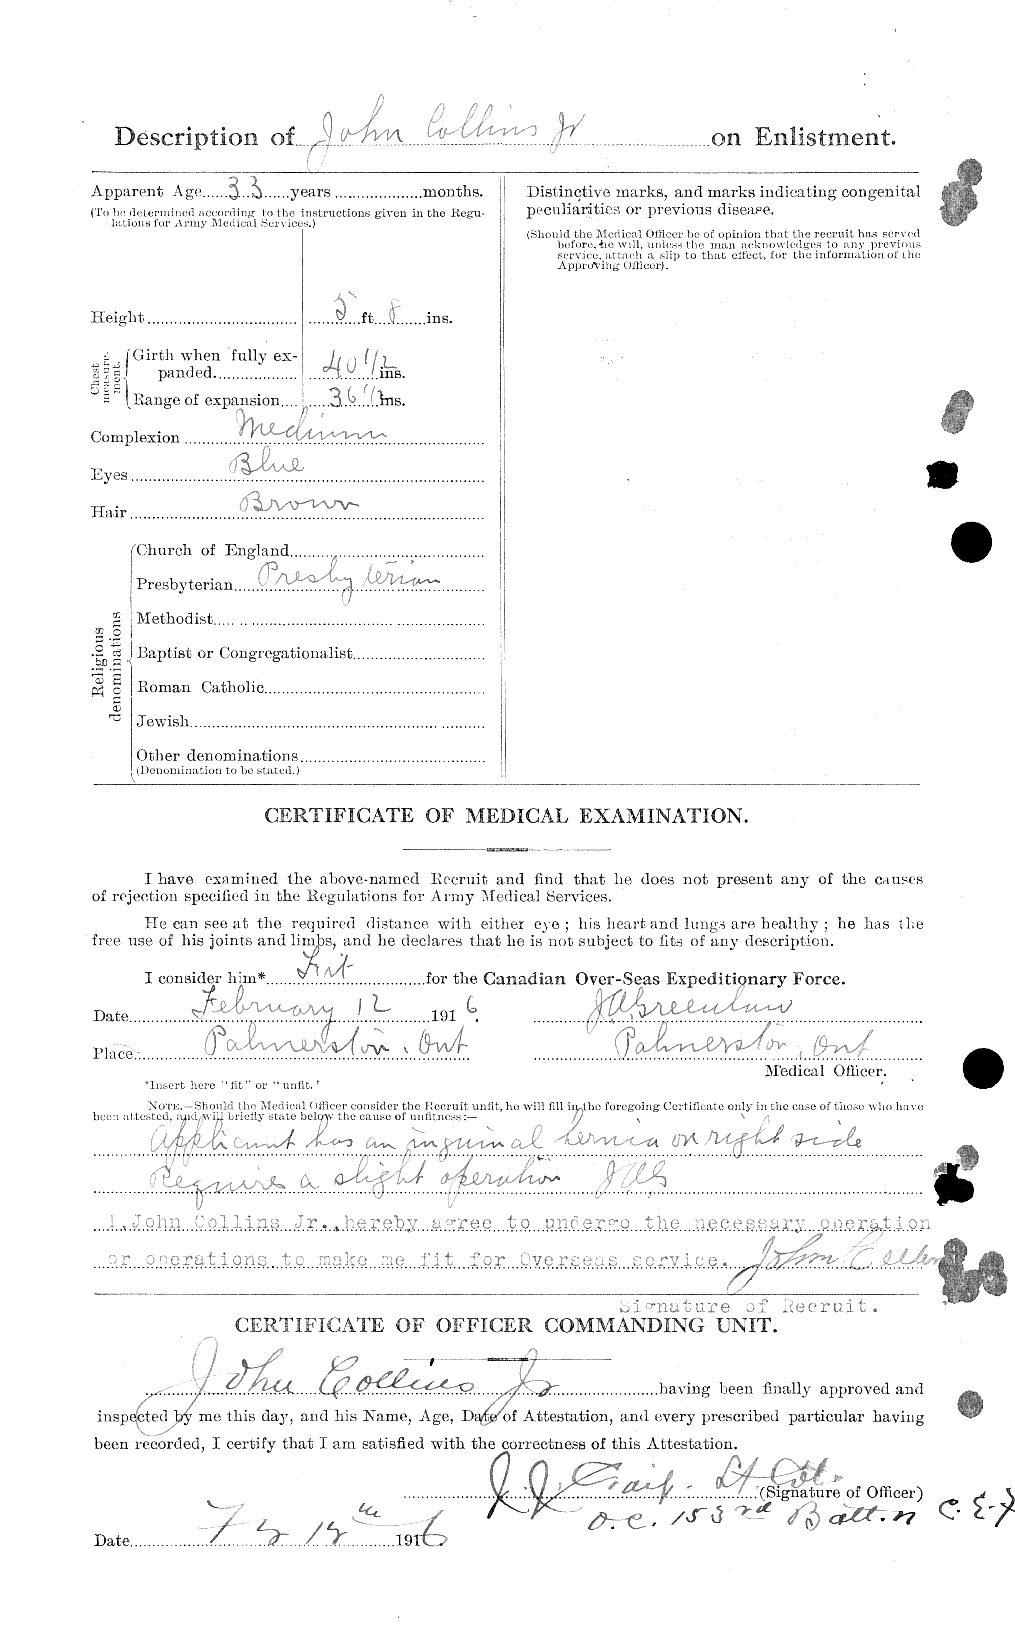 Dossiers du Personnel de la Première Guerre mondiale - CEC 037985b